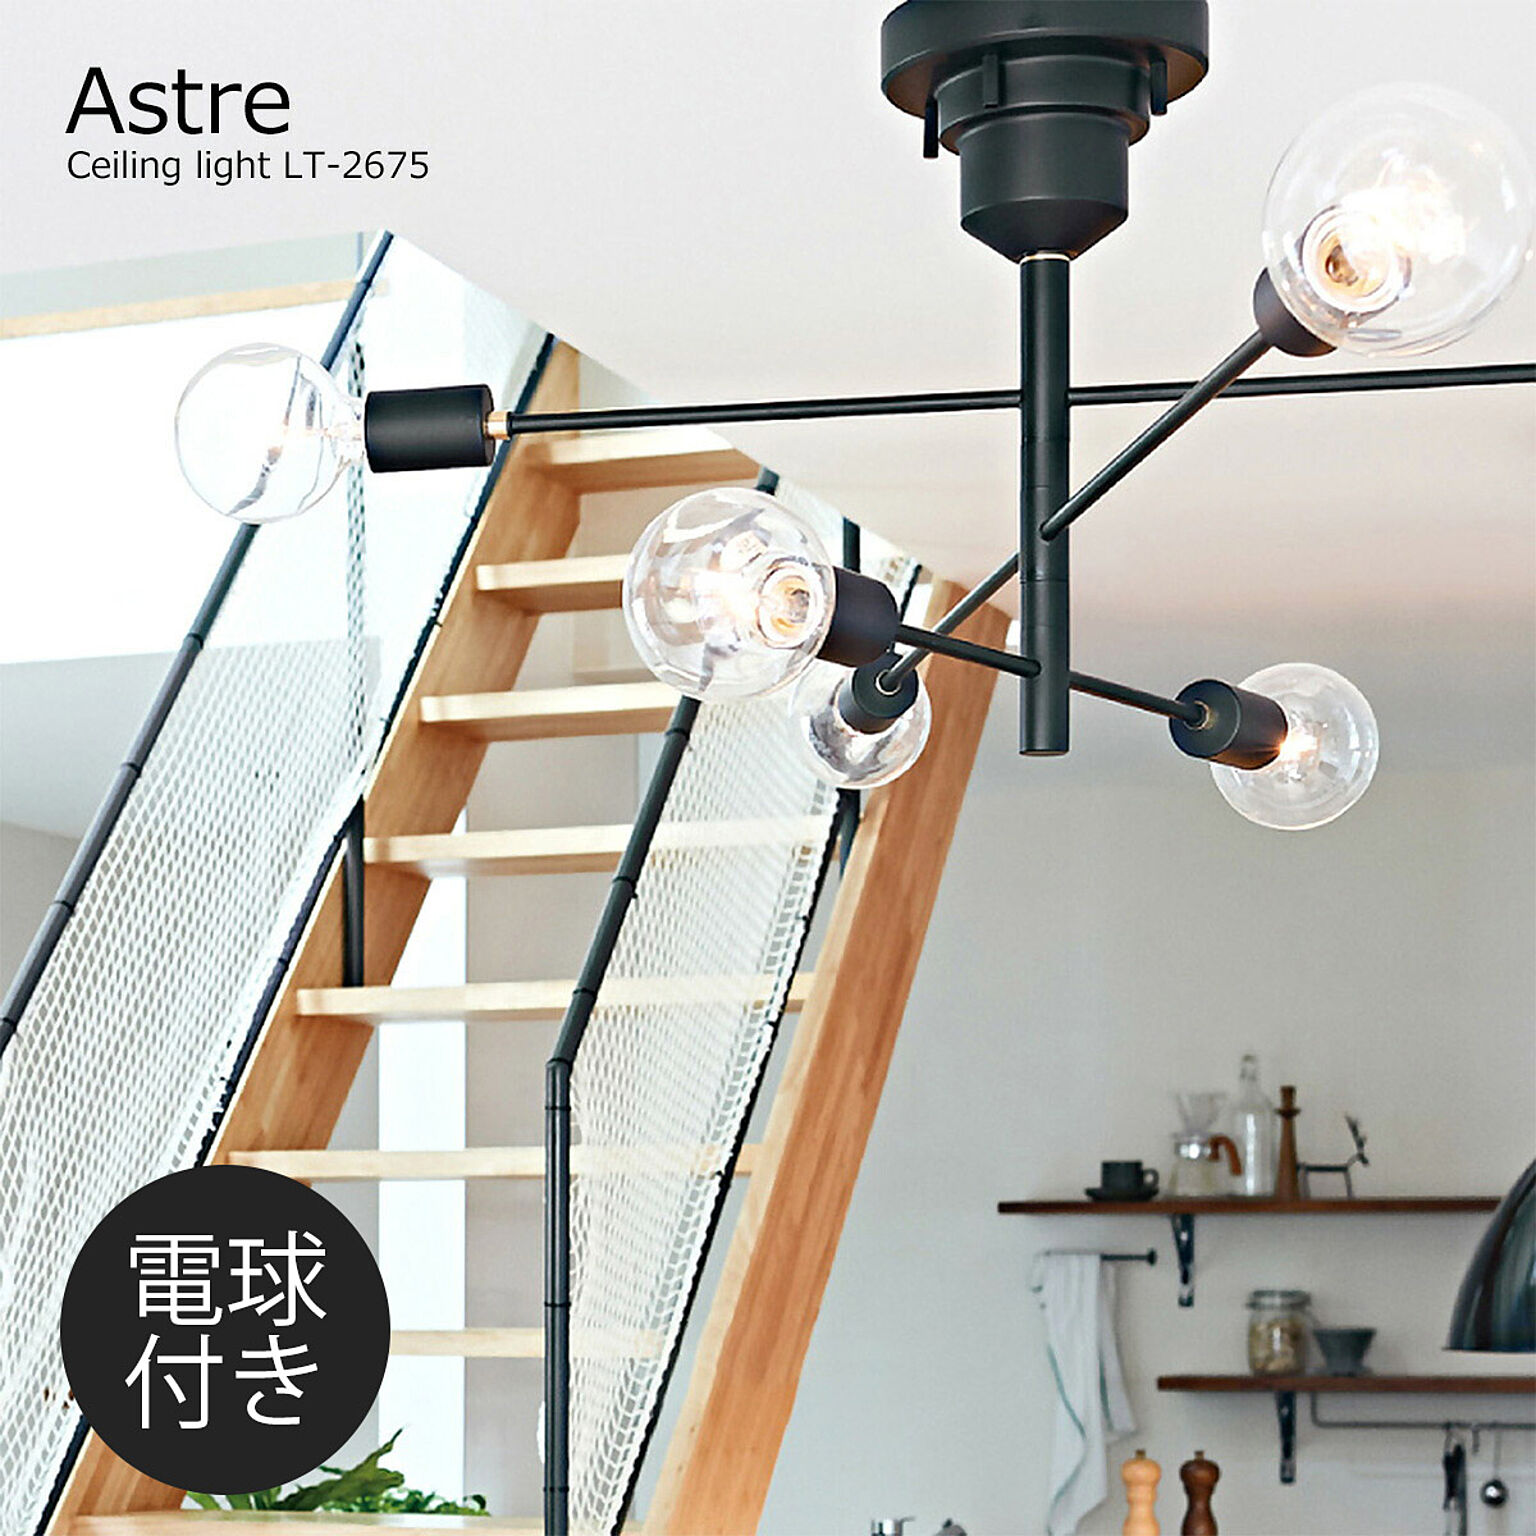 シーリングライト アストル Astre LT-2675(電球あり) 6灯 白熱球付き LED対応 